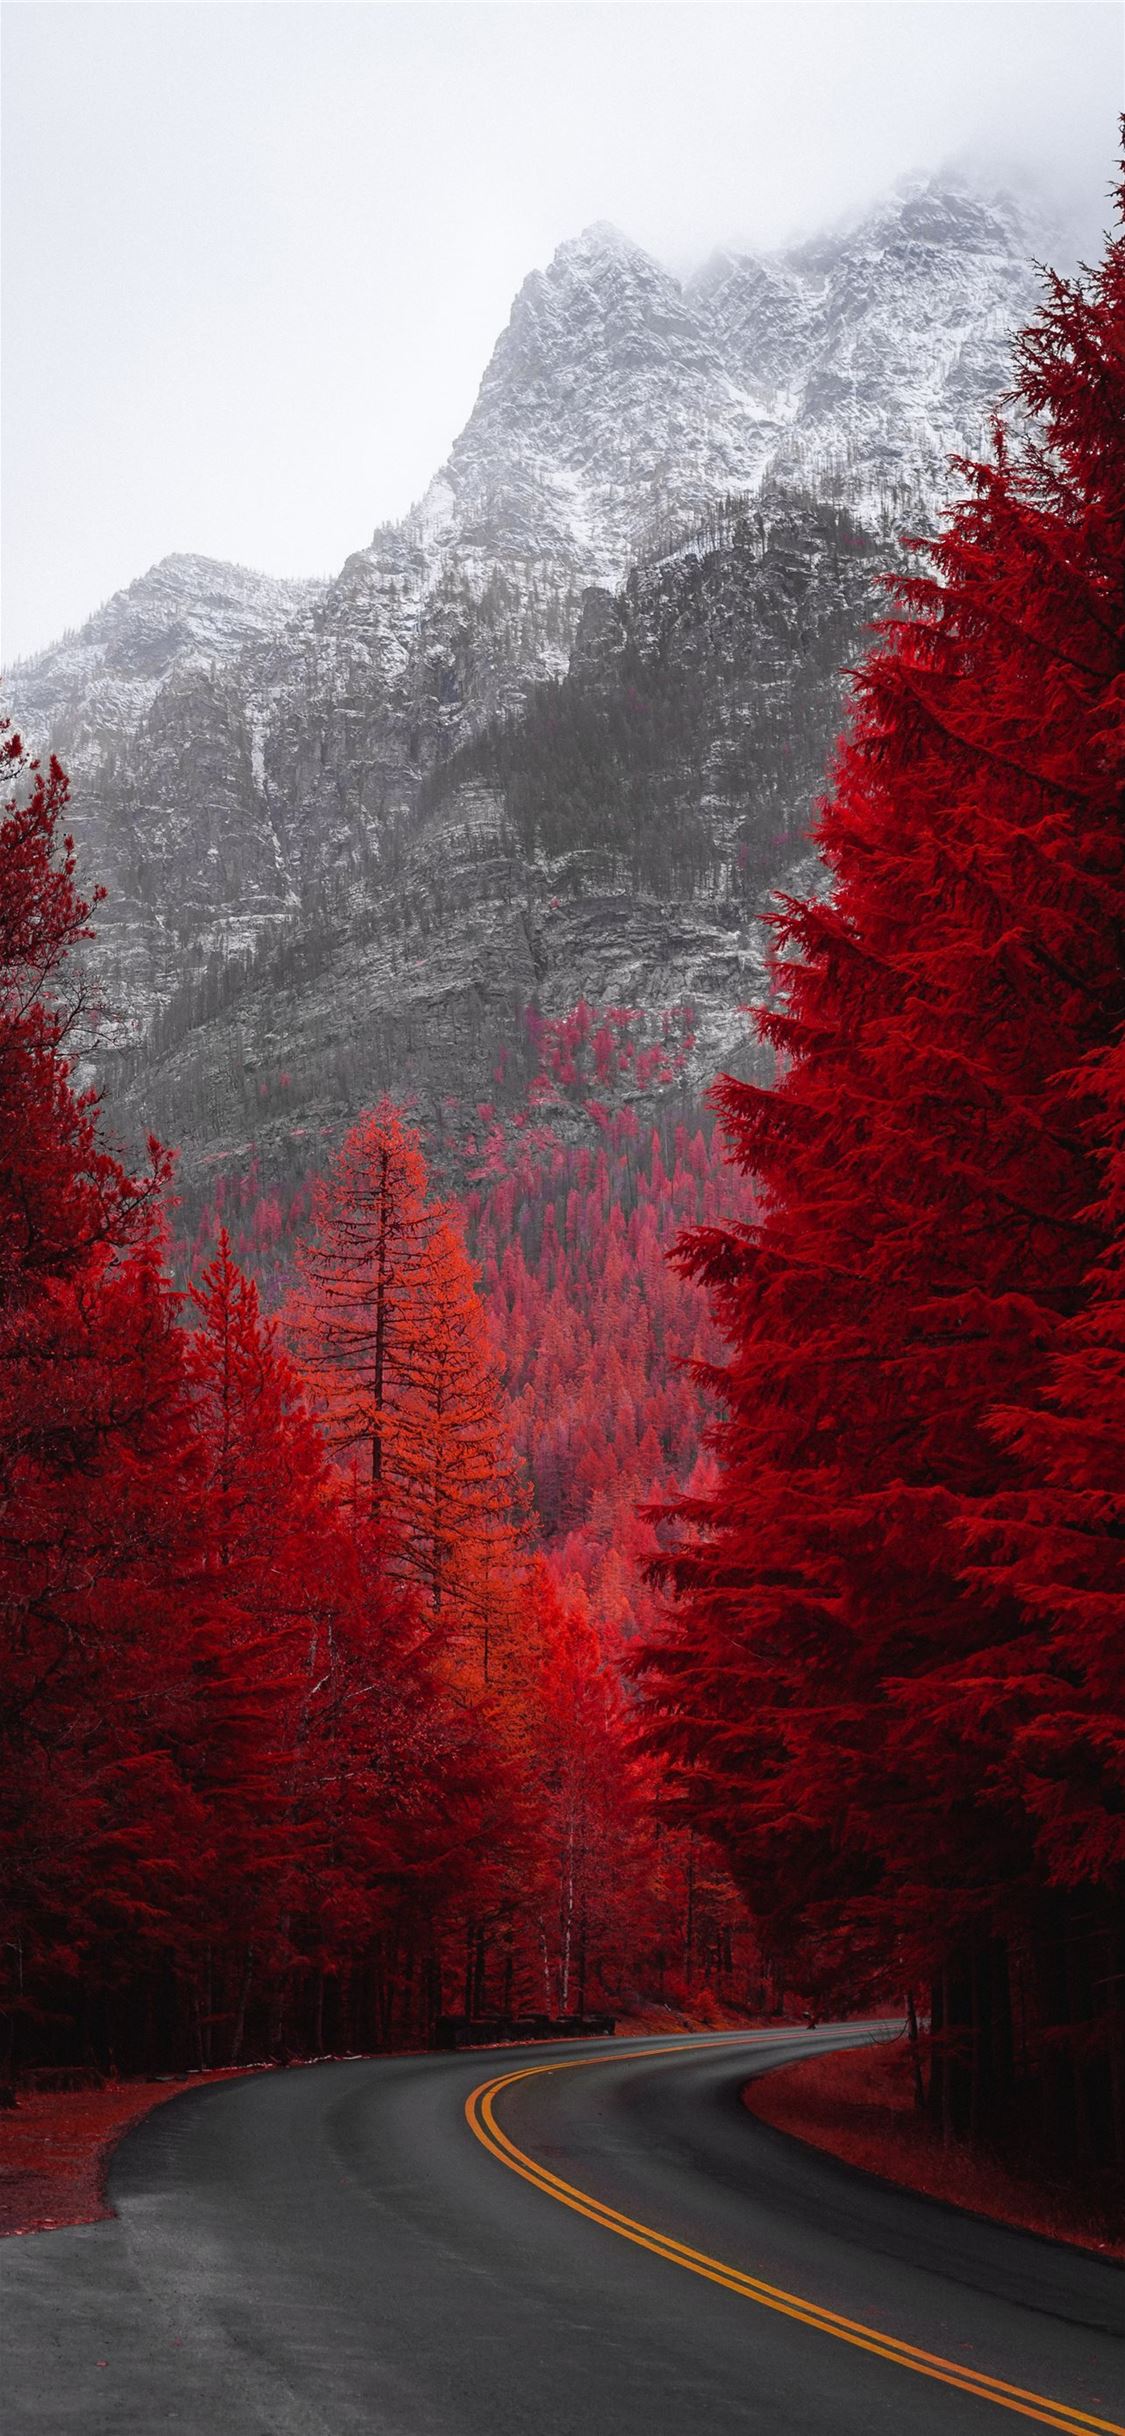 Đường ven cây đỏ là nơi lý tưởng để tận hưởng sự tĩnh lặng và yên bình của thiên nhiên. Hãy cùng nhau ngắm nhìn những hình ảnh đường ven cây đỏ để cảm nhận tình yêu đối với thiên nhiên và khám phá những bức ảnh đầy cảm hứng.